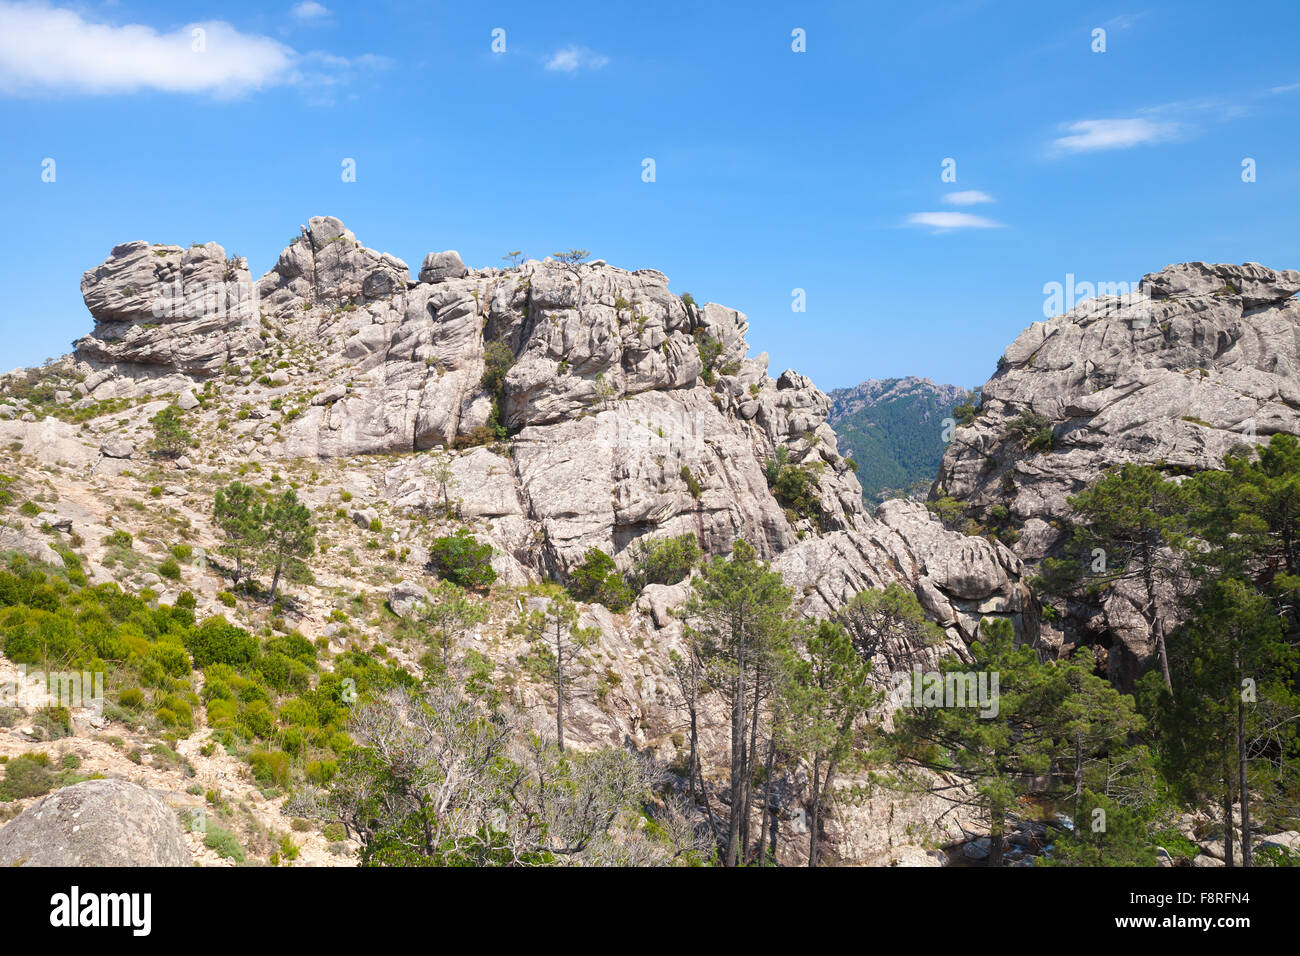 Montagne sauvage, des roches sous ciel bleu. Au sud de la Corse, France Banque D'Images